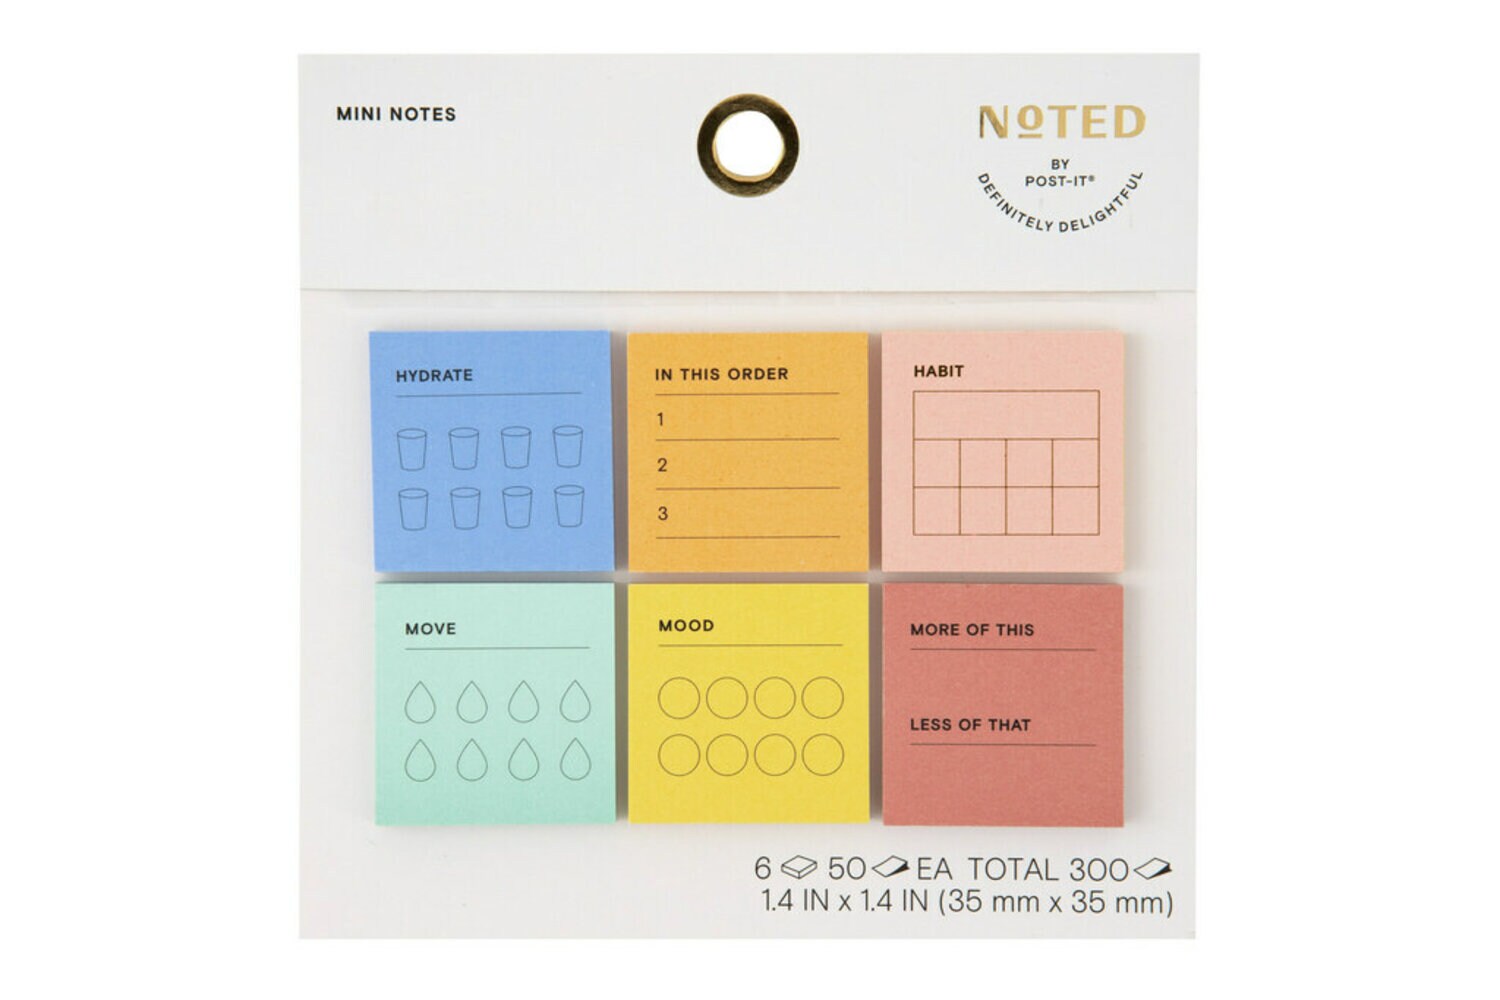 7100292563 - Post-it Mini Notes NTDW-MINI-1, 1.4 in x 1.4 in (35 mm x 35 mm)